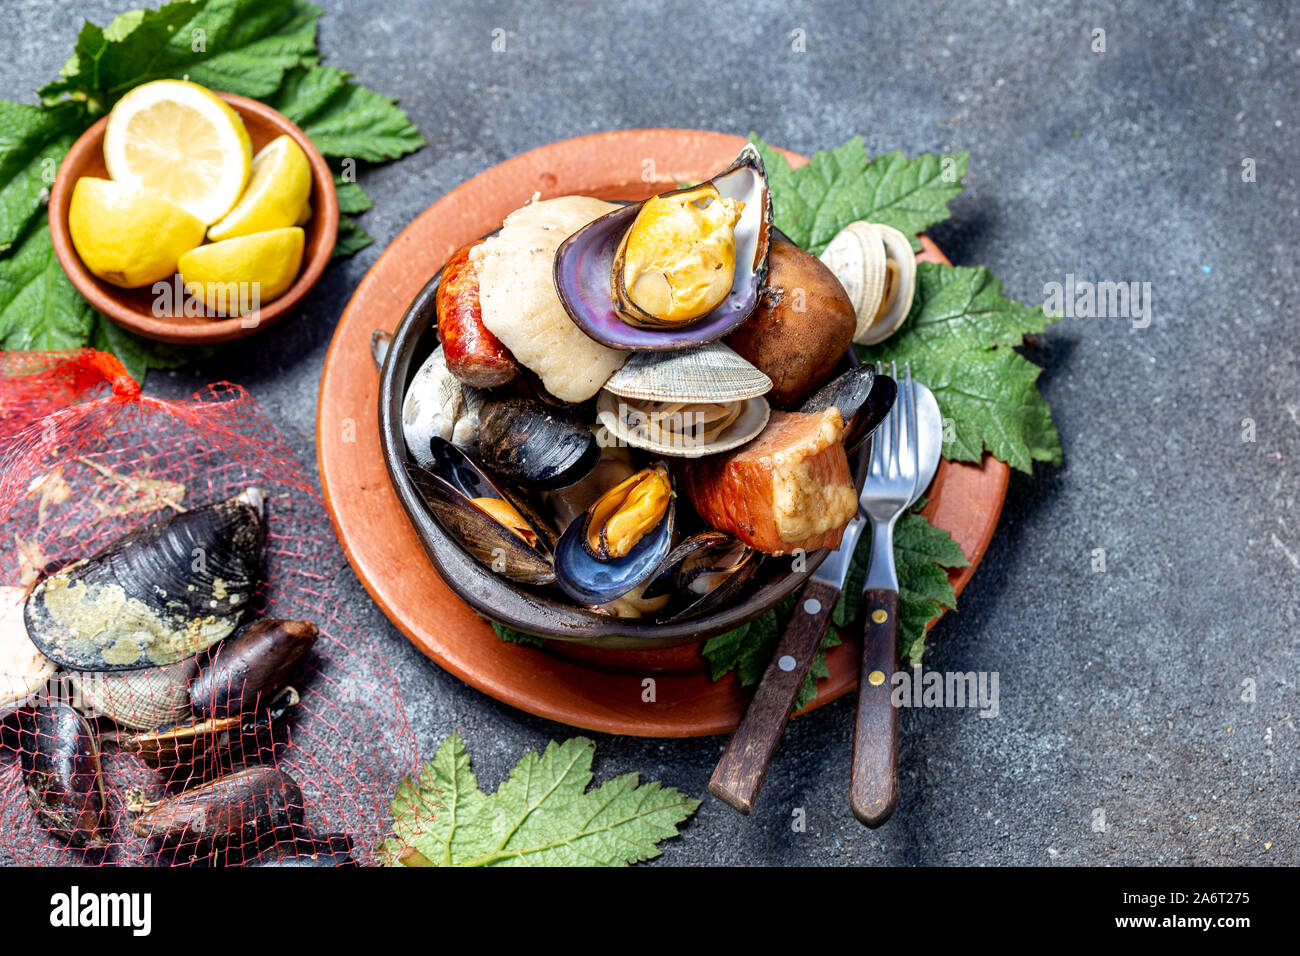 Berühmte traditionelle Gericht der Süden von Chile und der chiloe Archipel - Curanto al Hoyo, Kuranto. Verschiedene Meeresfrüchte, Fleisch und Kartoffeln milcao Stockfoto